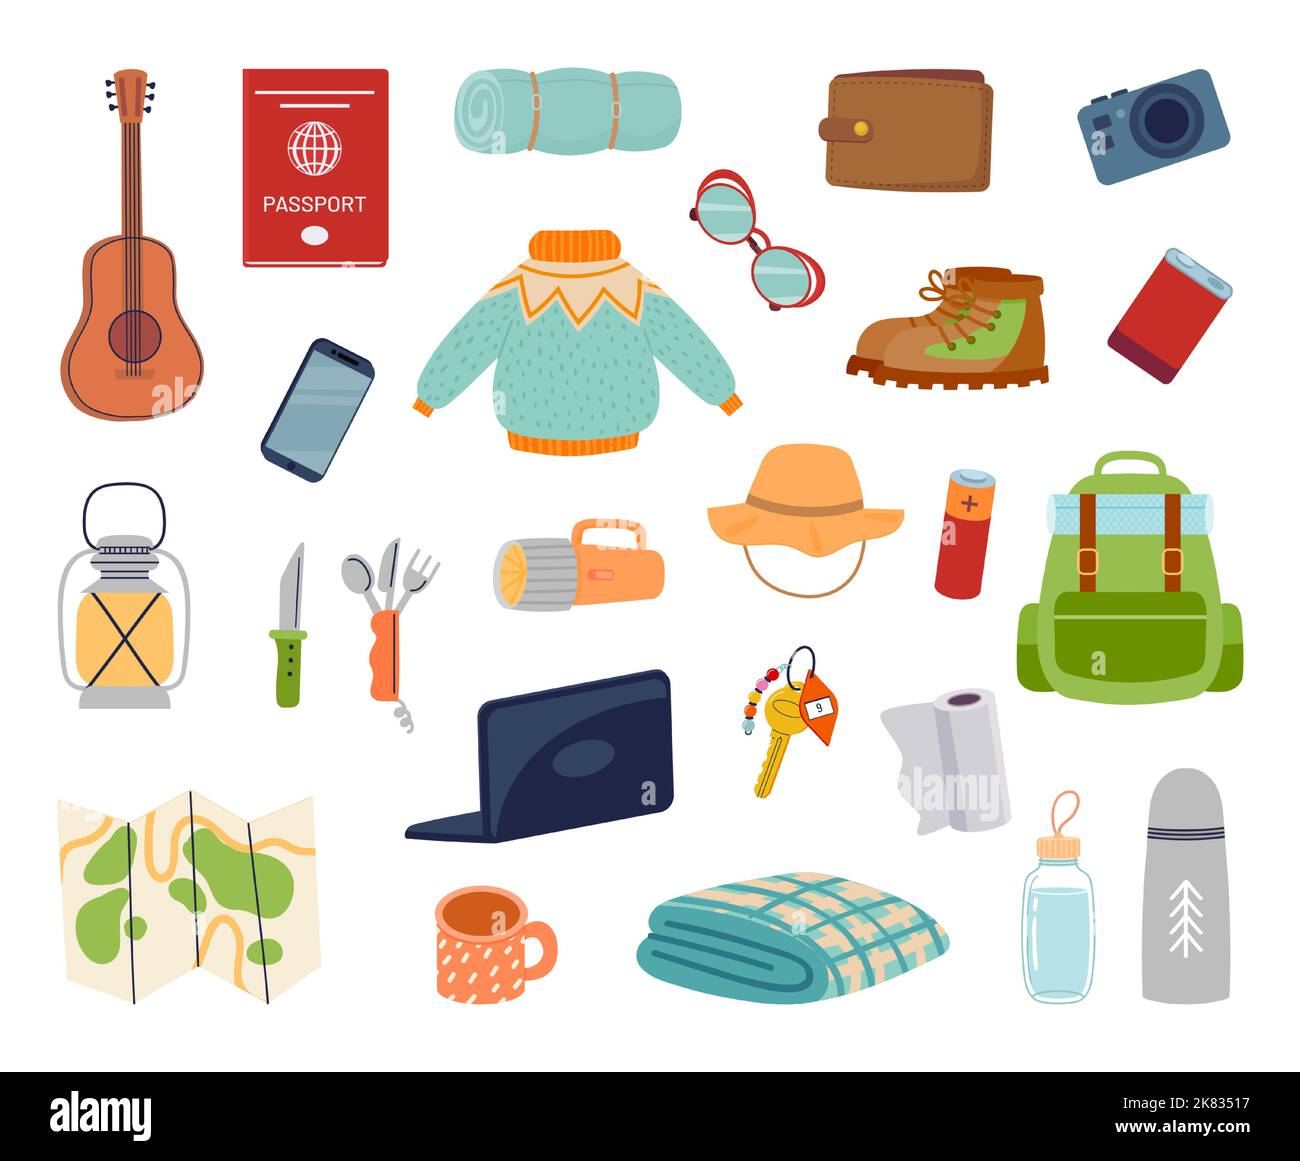 Tragen Sie jeden Tag Sachen für die Reise. Wesentliche Gegenstände für den Tourismus. Rucksack mit Ausrüstung und Zubehör als Gitarre, Karte Stock Vektor